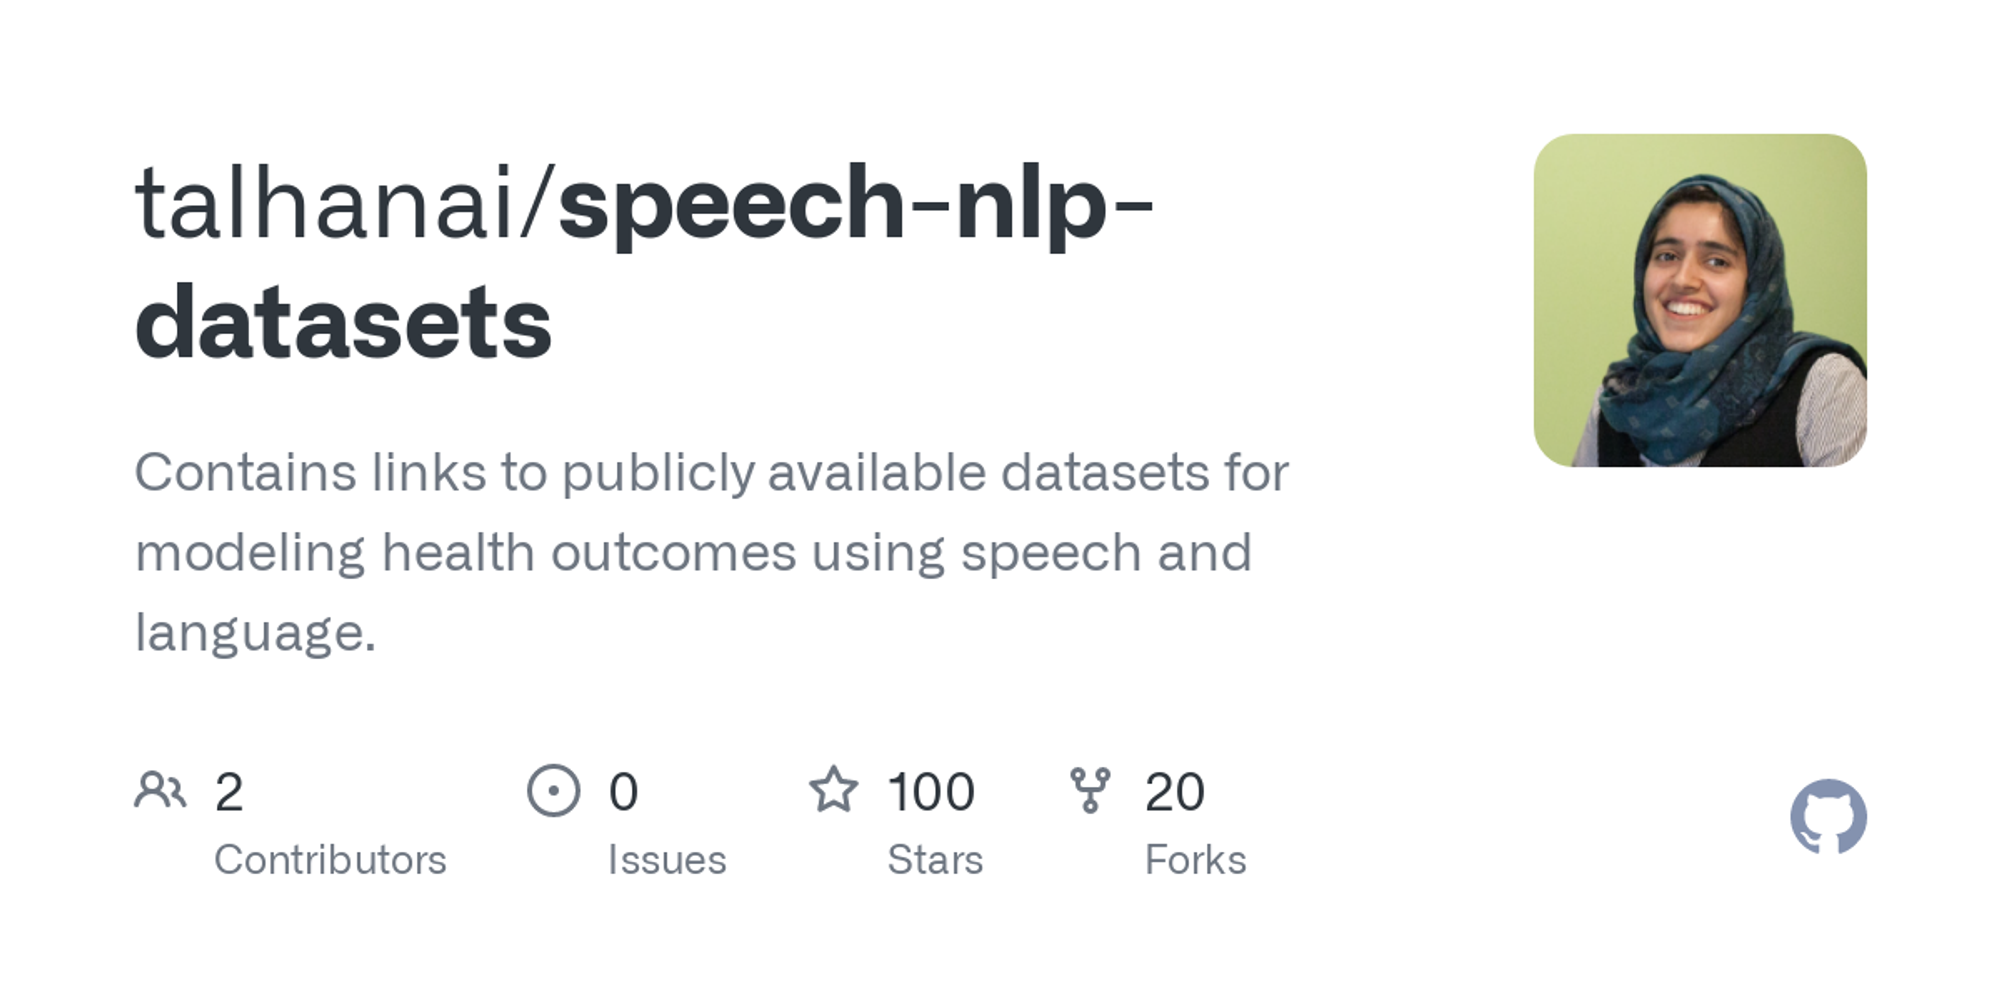 speech-nlp-datasets/README.md at master · talhanai/speech-nlp-datasets